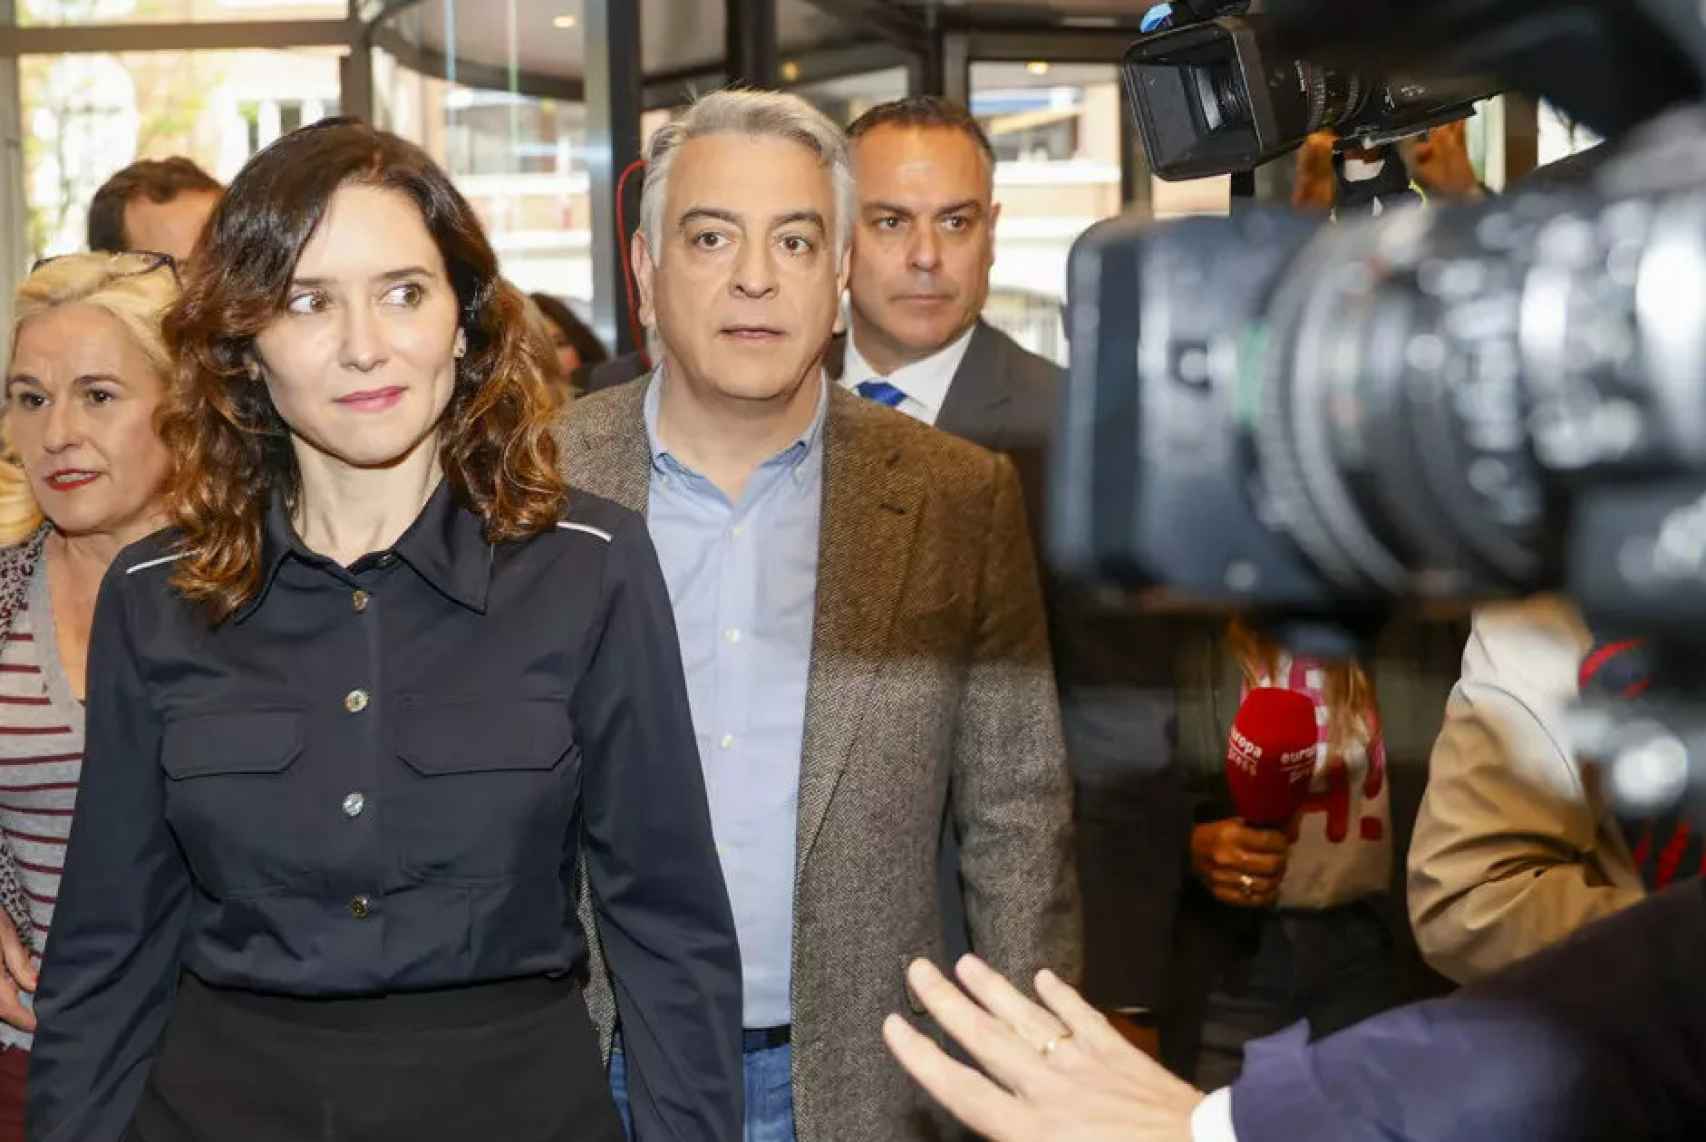 La presidenta de la CAM, Isabel Díaz Ayuso, durante su participación en la campaña electoral vasca, junto al candidato del PP a la Lehendakaritza, Javier de Andrés, este martes.